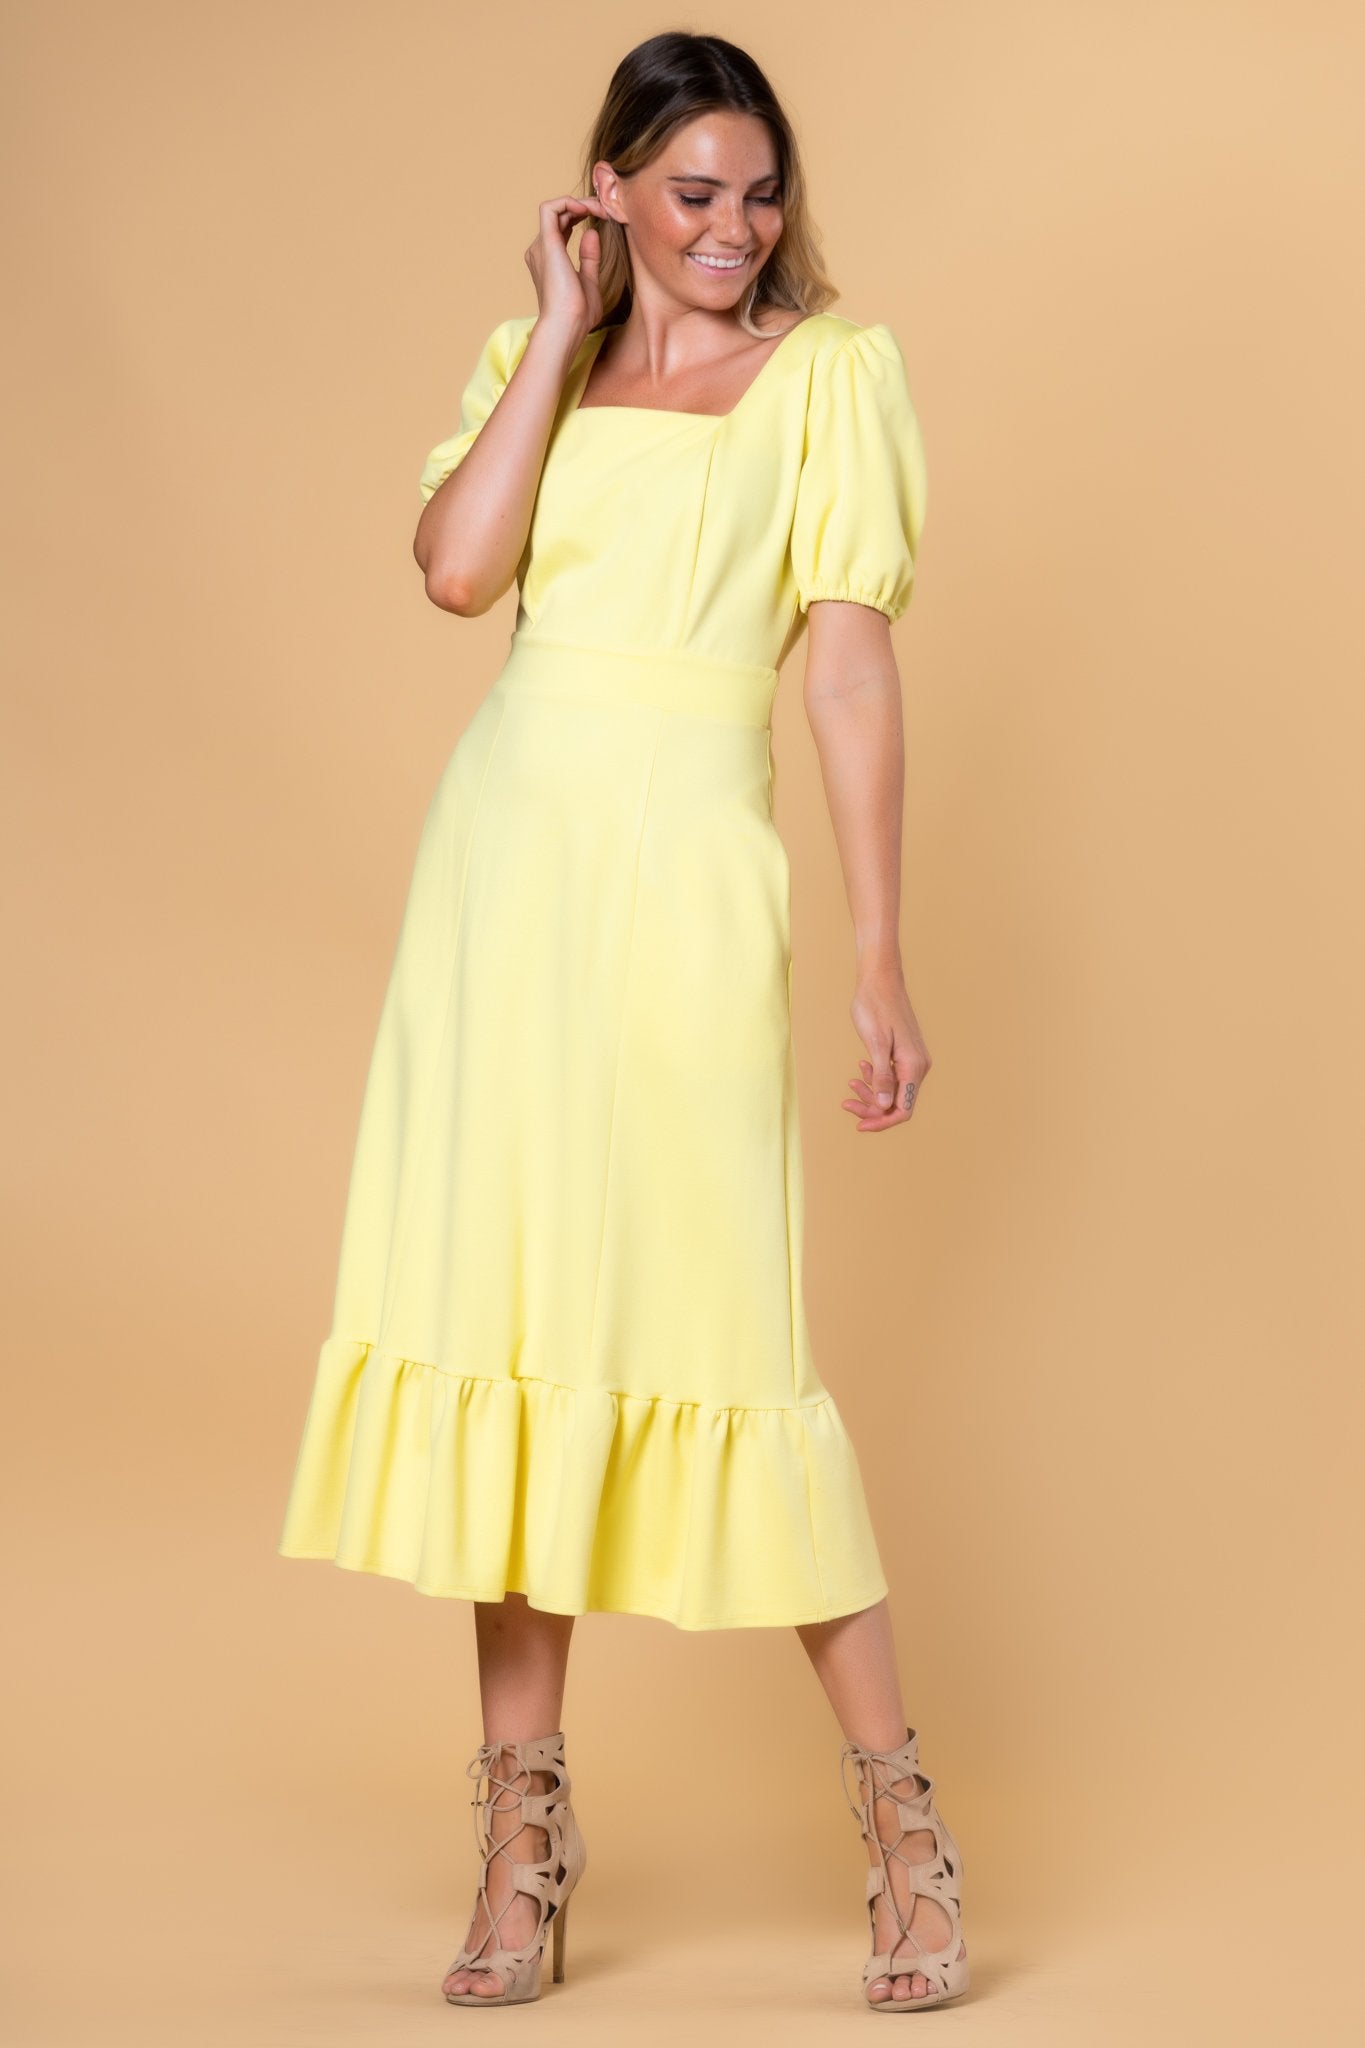 Brigitte Brianna Berkley Modest Dress